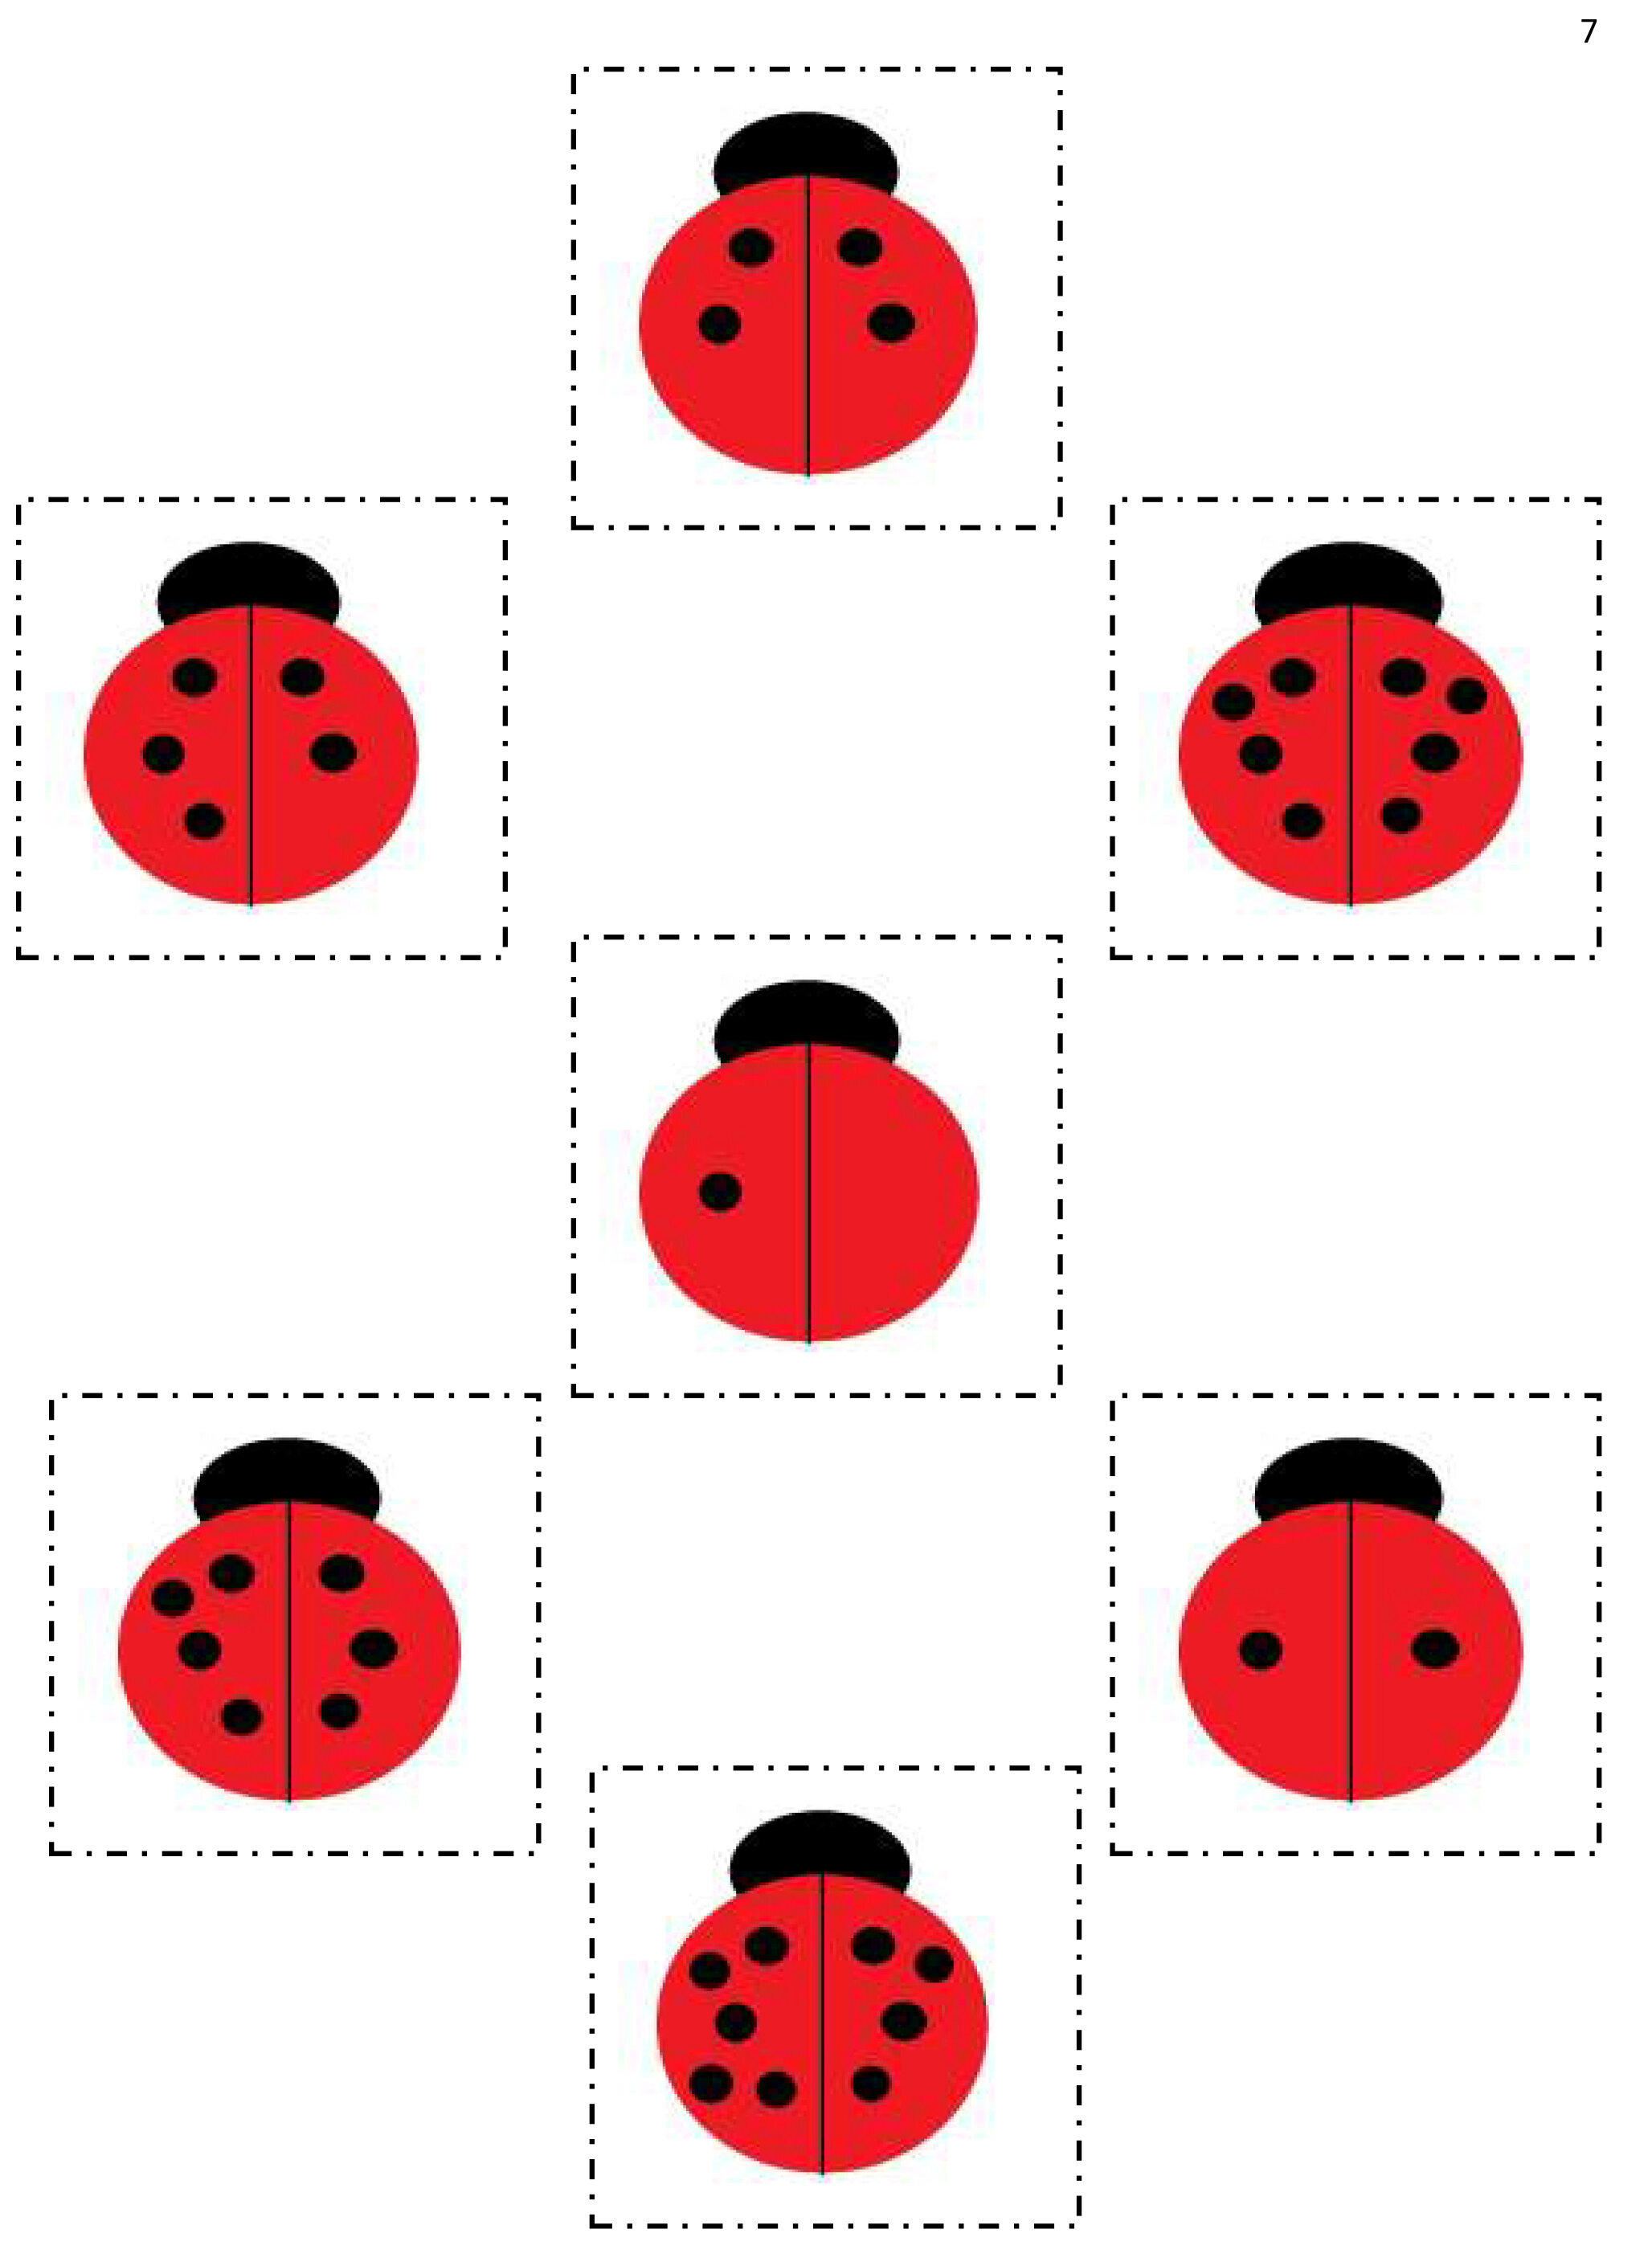 Ladybug Spot Counting.jpg